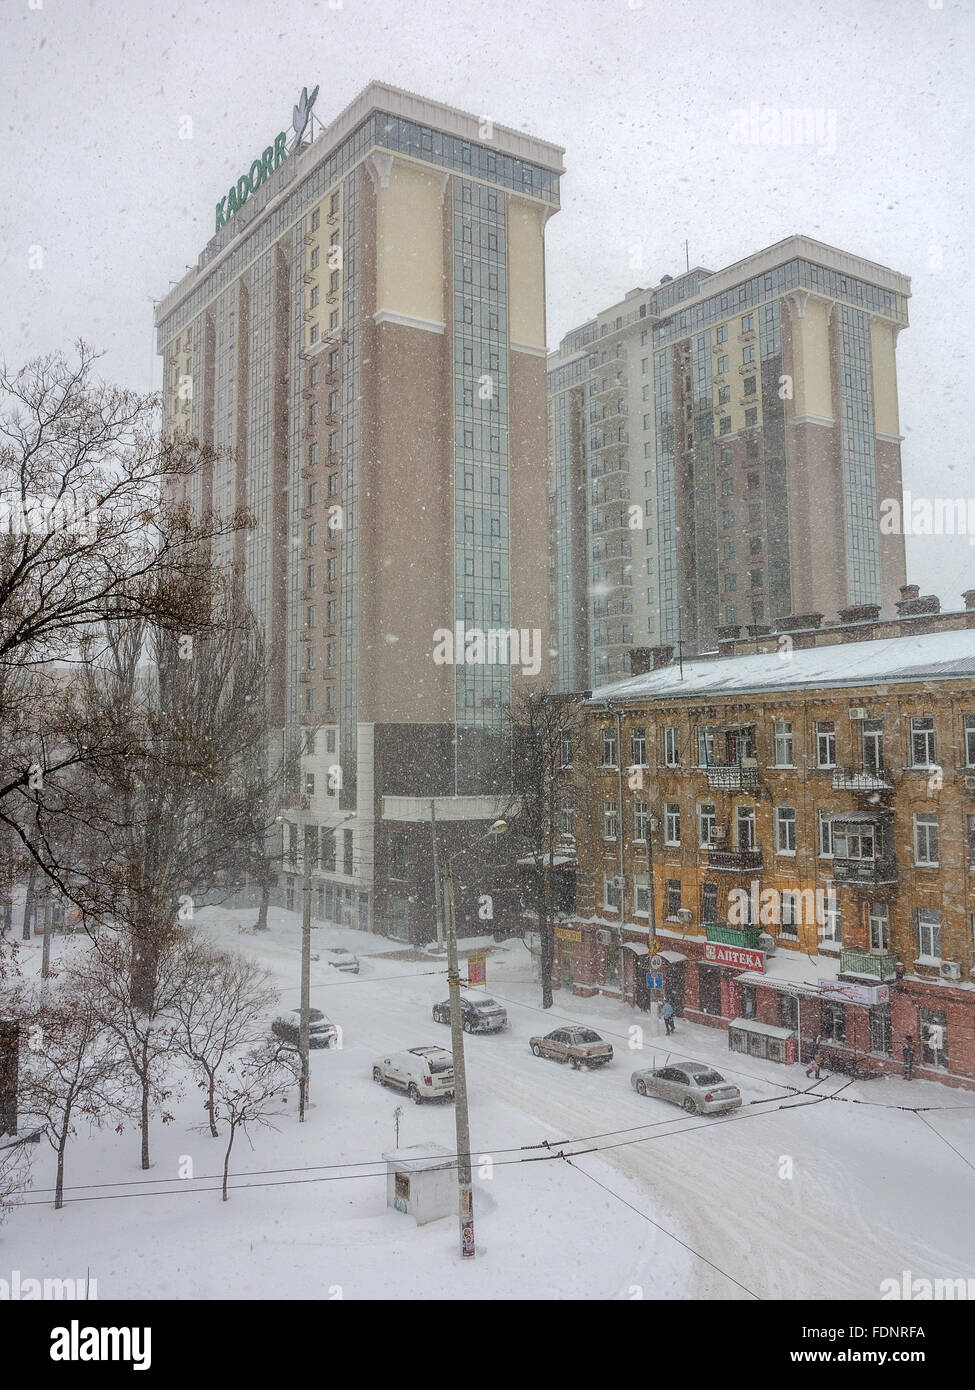 Odessa, Ucraina - 18 Gennaio 2016: un potente ciclone, tempesta, neve pesante paralizzato la città. La gente che camminava per strada assortiti Foto Stock